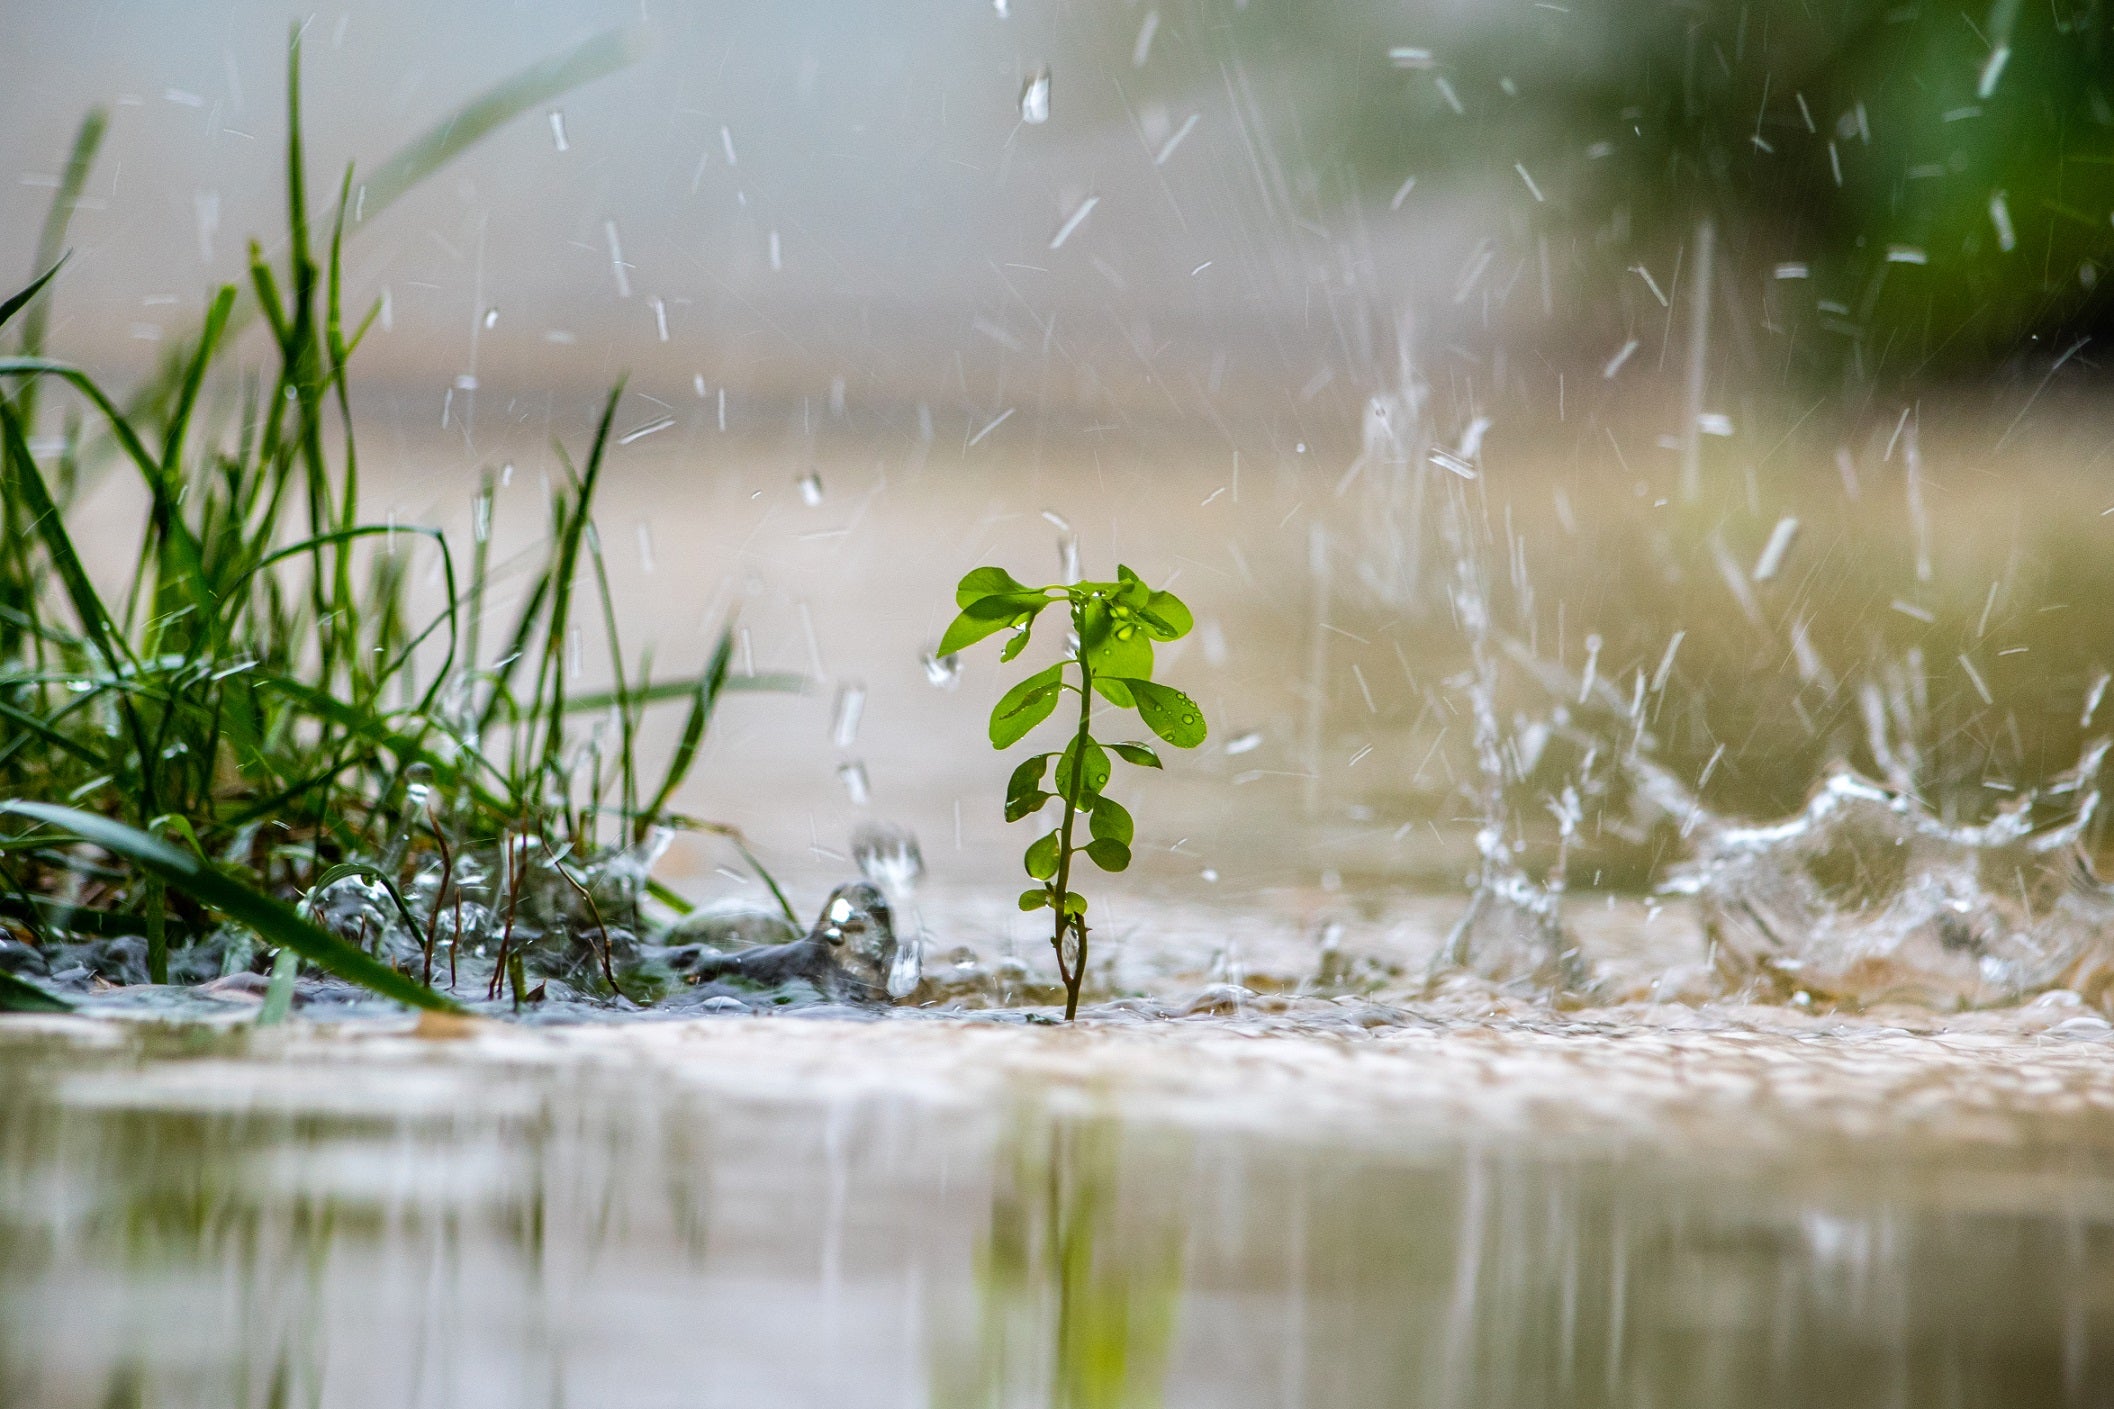 Rainy days: Protecting Plants from Heavy Rain